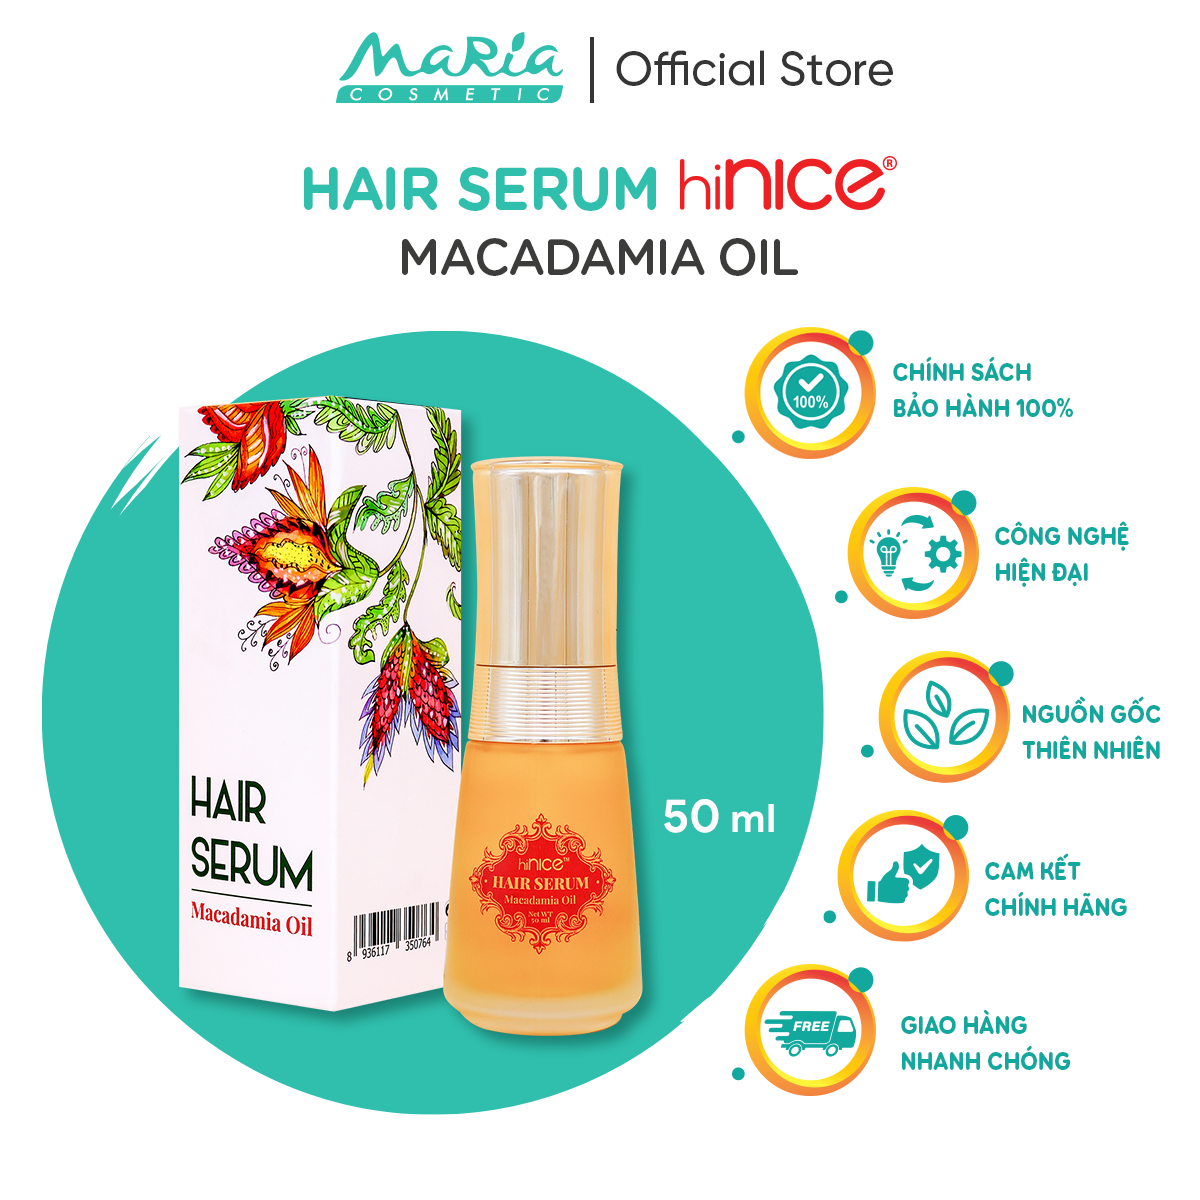 Tinh dầu hiNICE Macadamia Oil dưỡng tóc chắc khỏe vào nếp 50ml